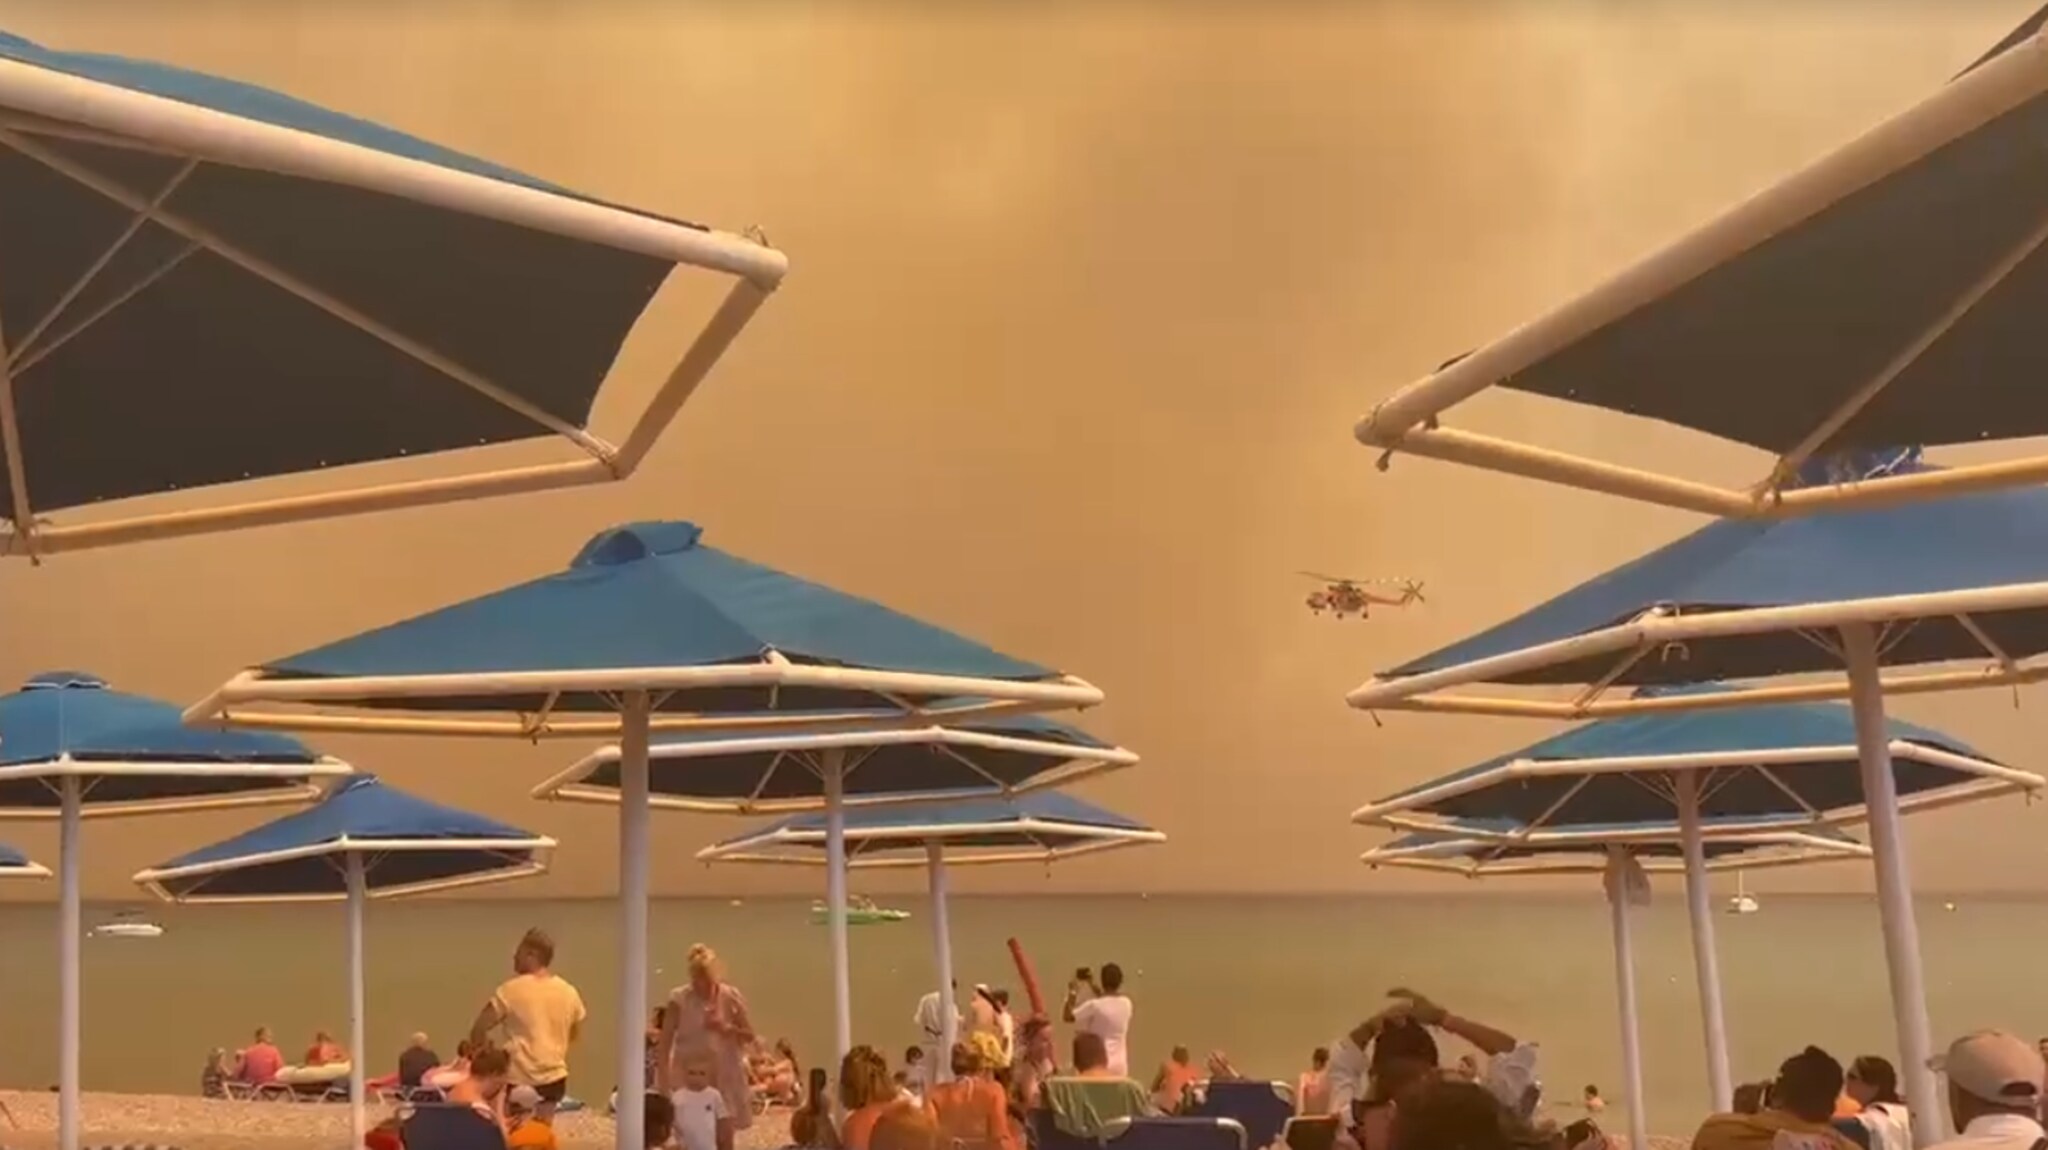 Dutch people in Rhodes flee bushfires: 'Saw sky turns orange'